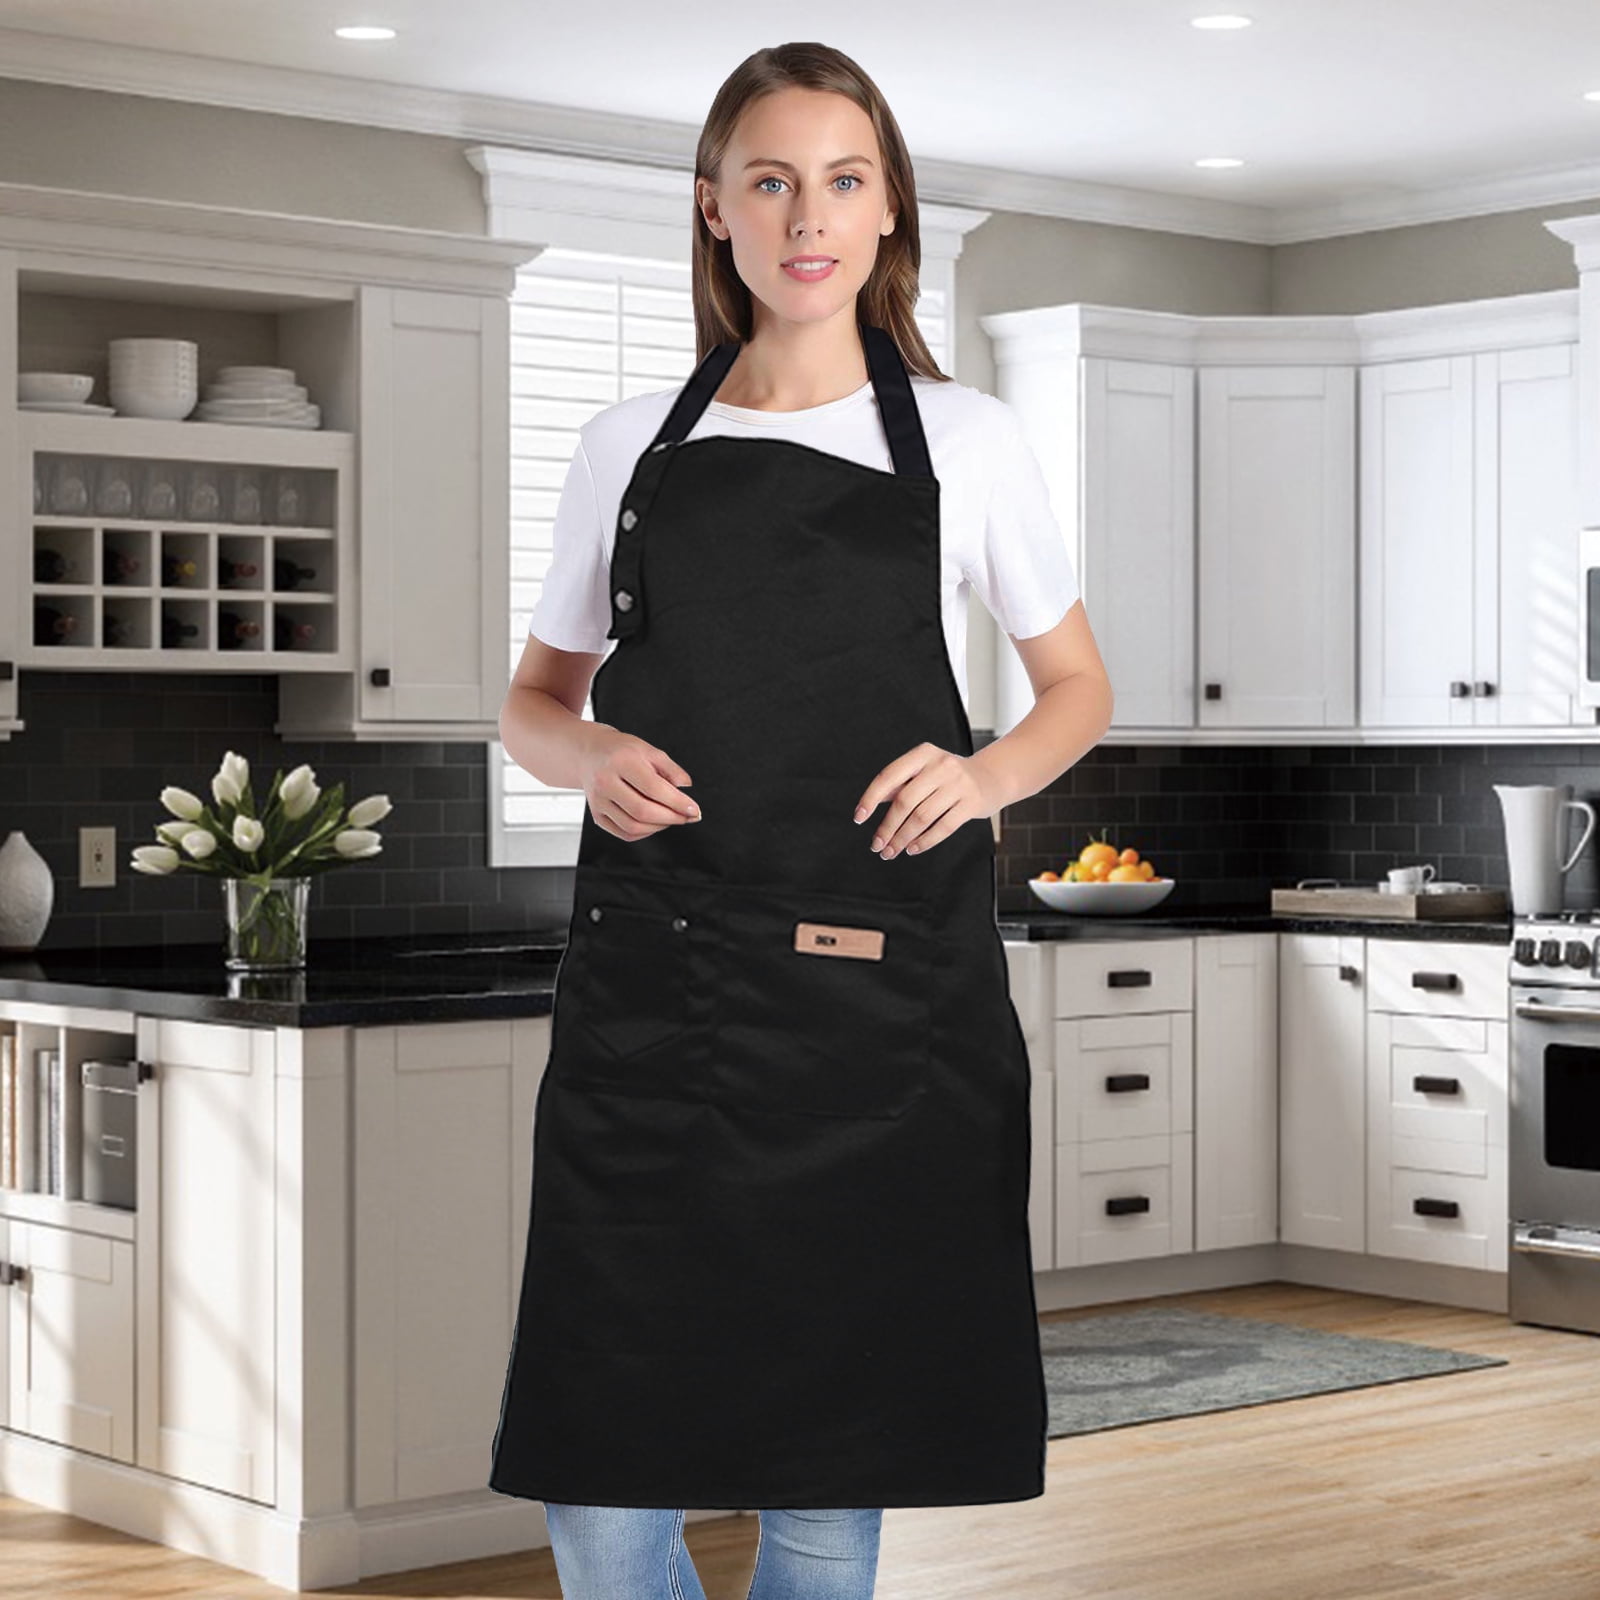 Unisex Adjustable Bib Apron Dress Kitchen Restaurant Chef Cooking BBQ W/Pocket 